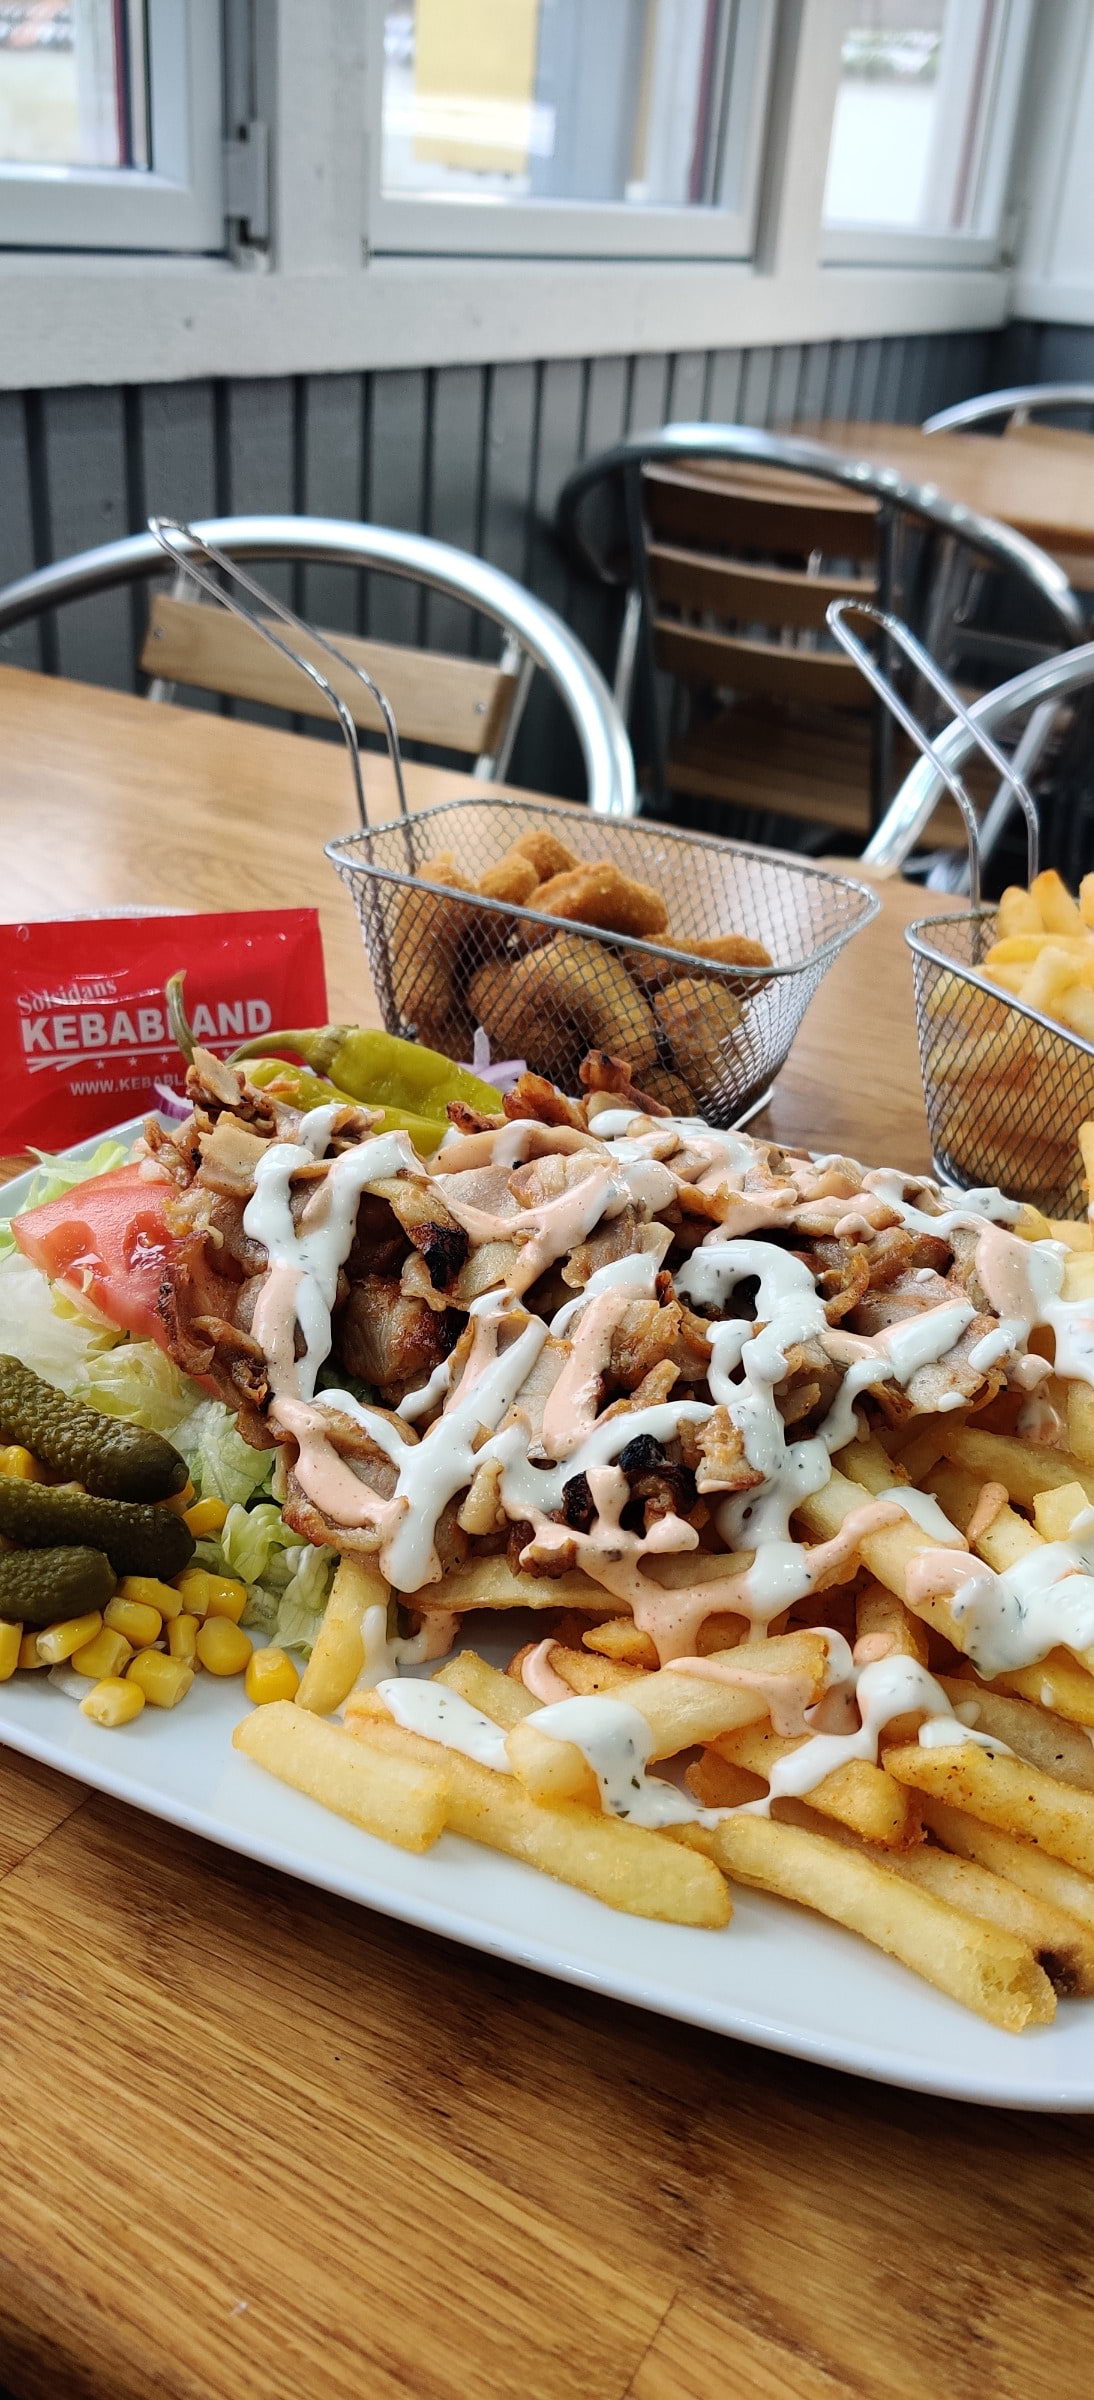 Kyckling Kebabtalrik – Photo from Kebabland by Shahzad A. (11/03/2021)